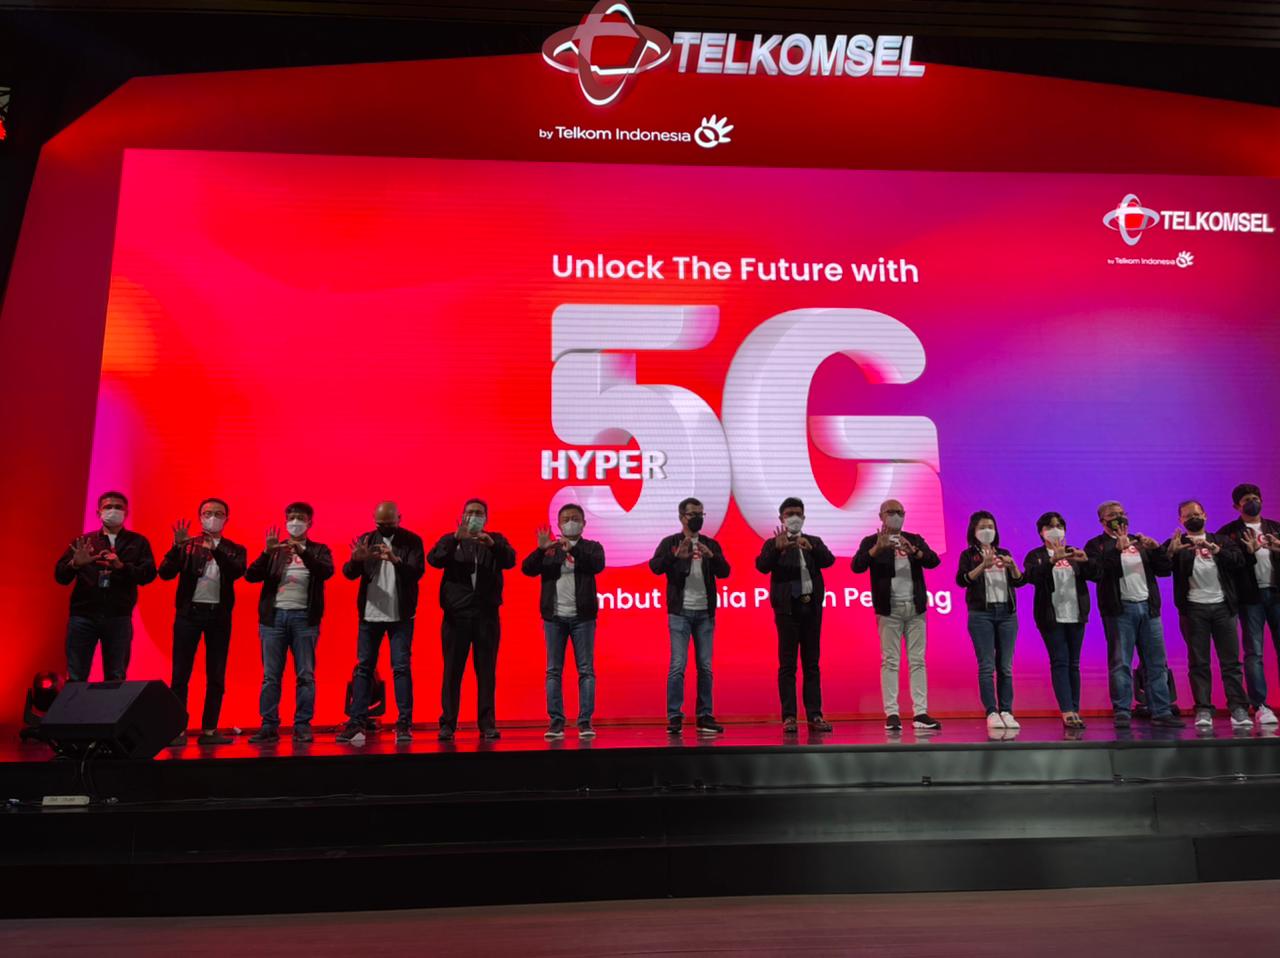 Tonggak Sejarah Telkomsel, Selamat Datang 5G di Indonesia!